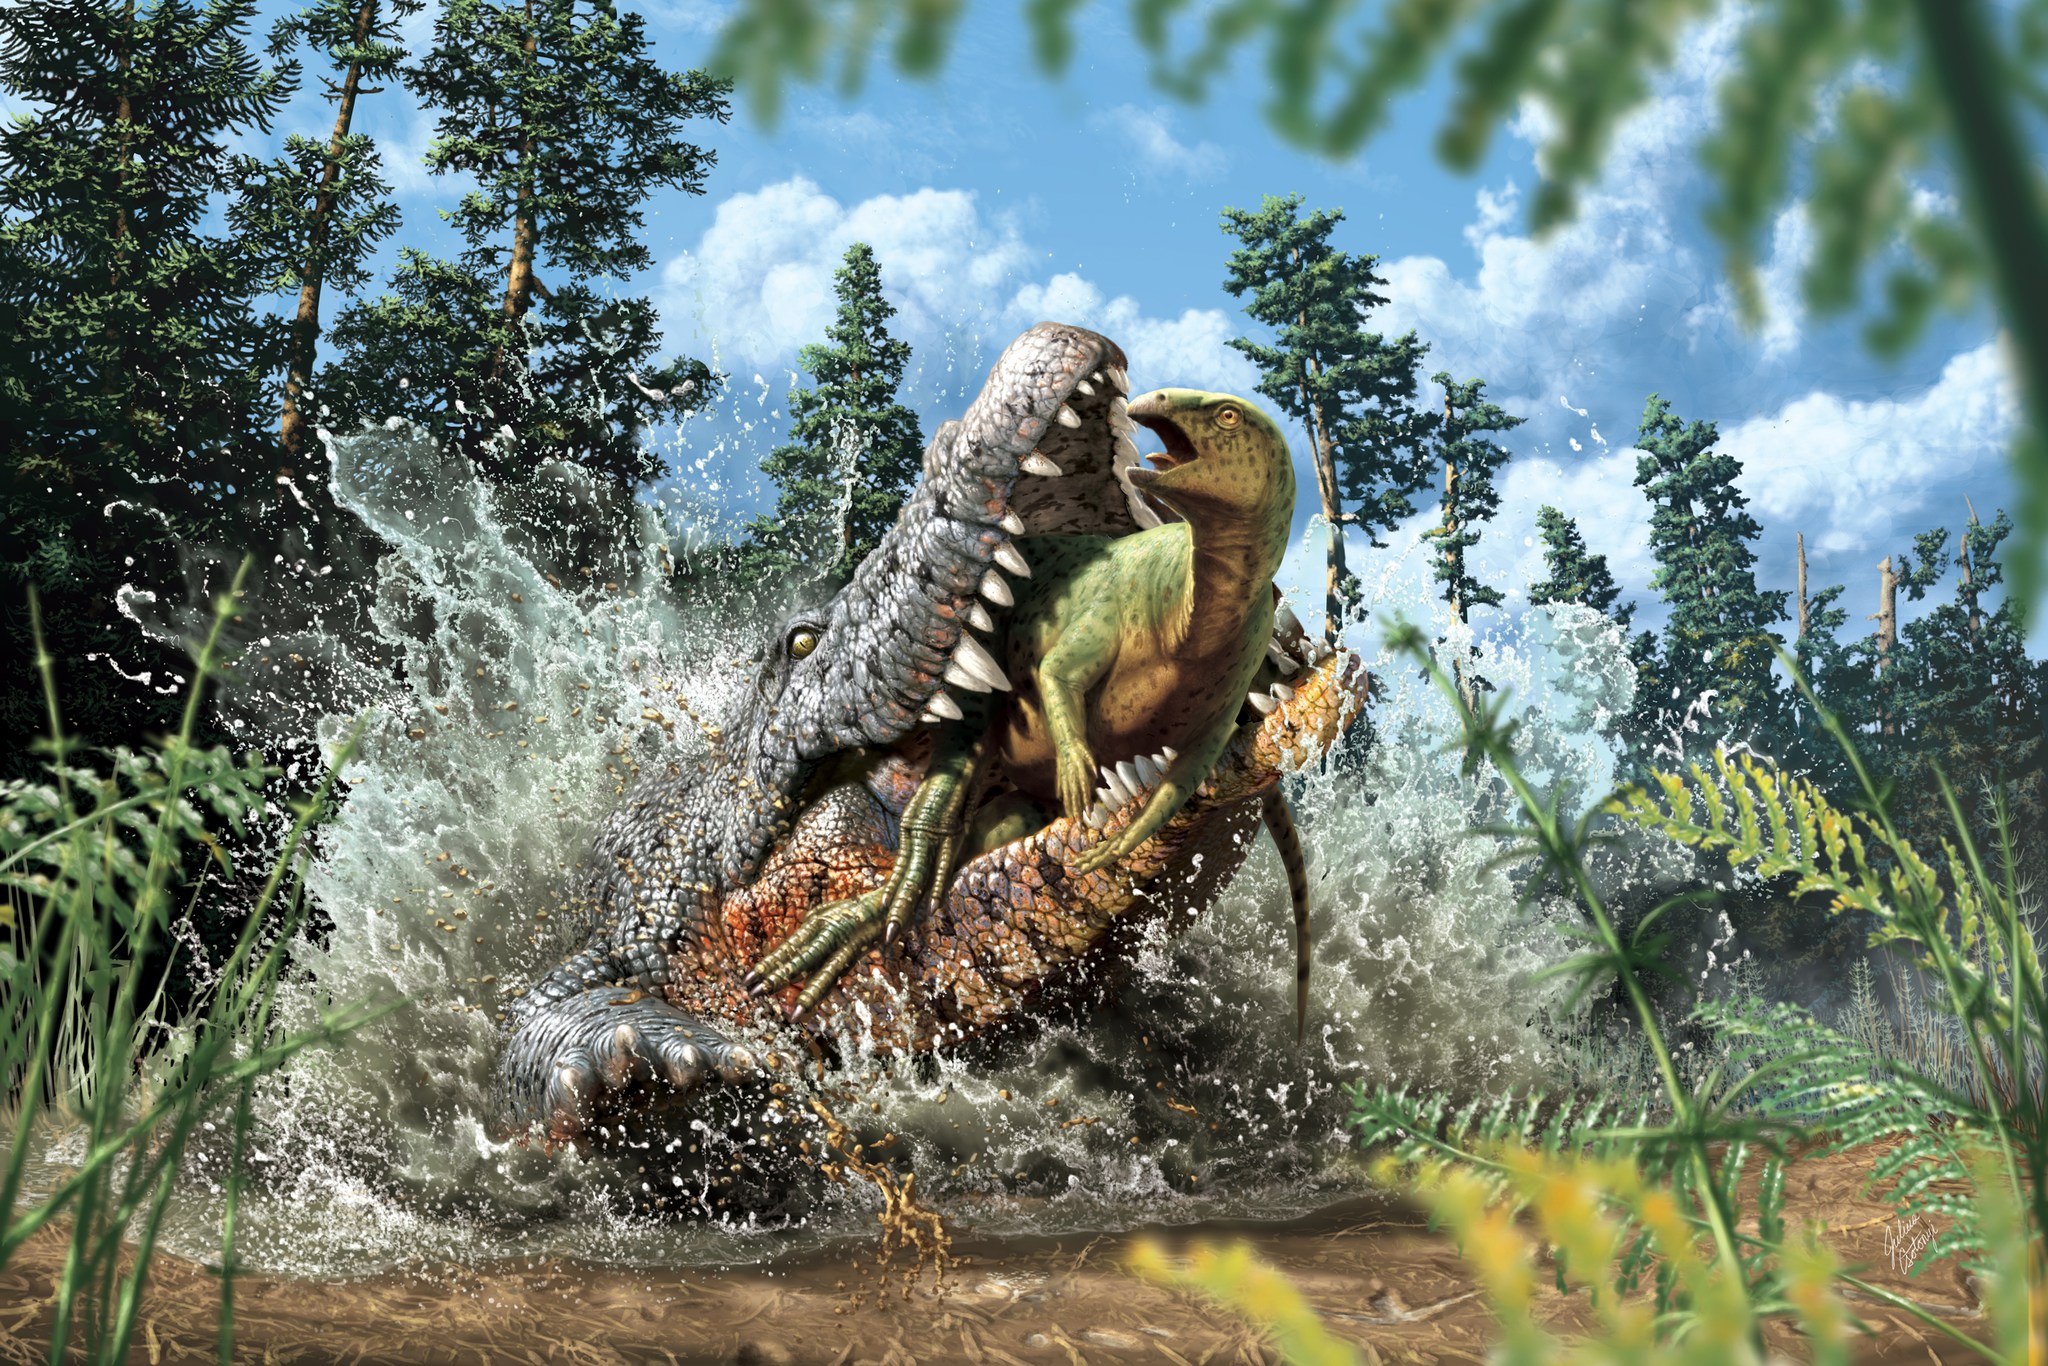 白垩纪鳄鱼最后一餐 专家在胃里惊见恐龙